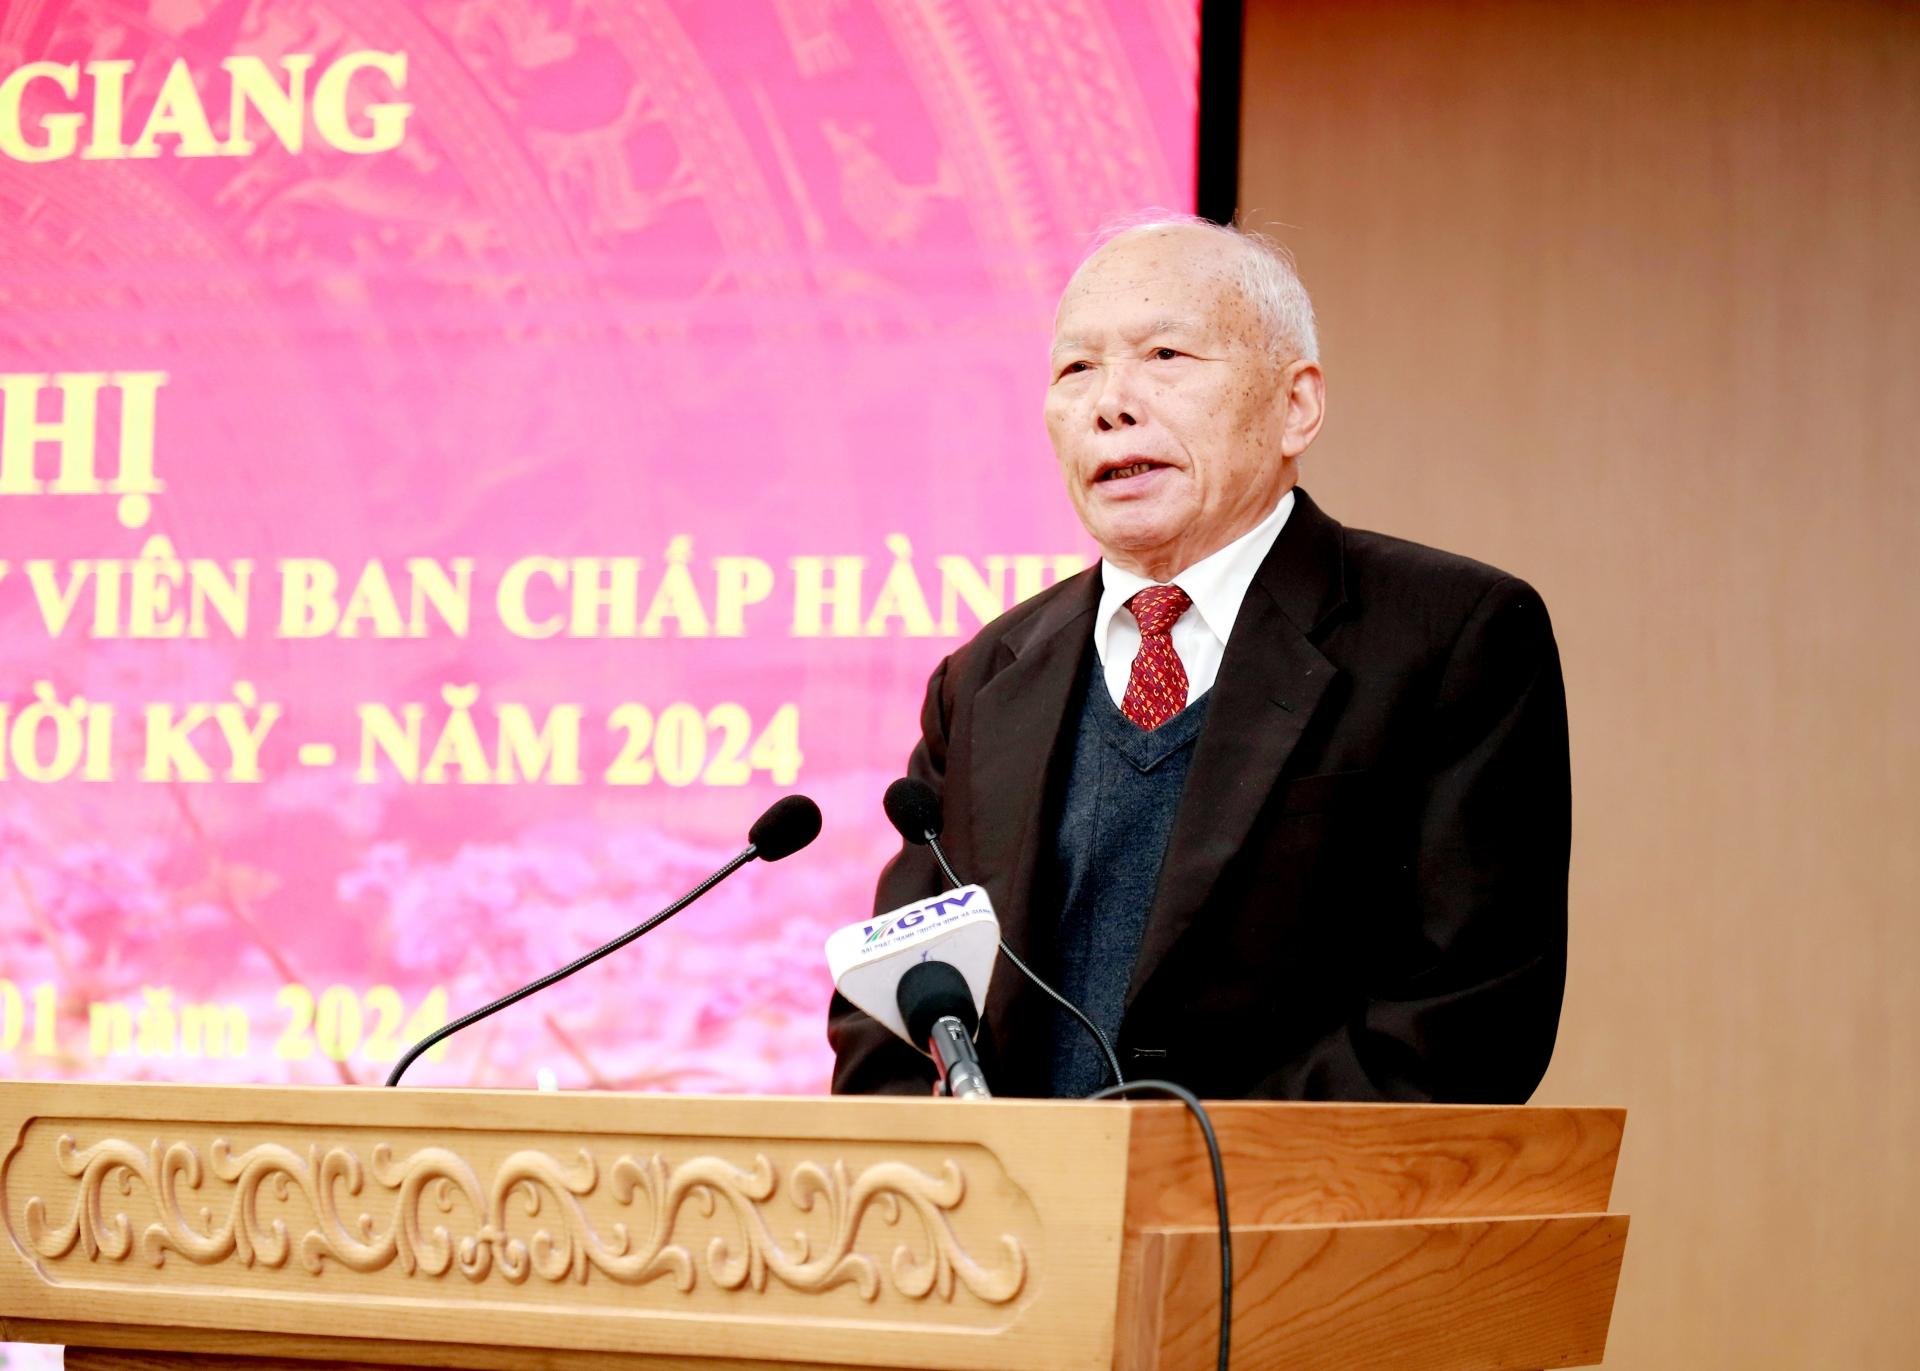 Nguyên Phó Bí thư Tỉnh ủy, nguyên Chủ tịch UBND tỉnh Triệu Đức Thanh thảo luận tại hội nghị.